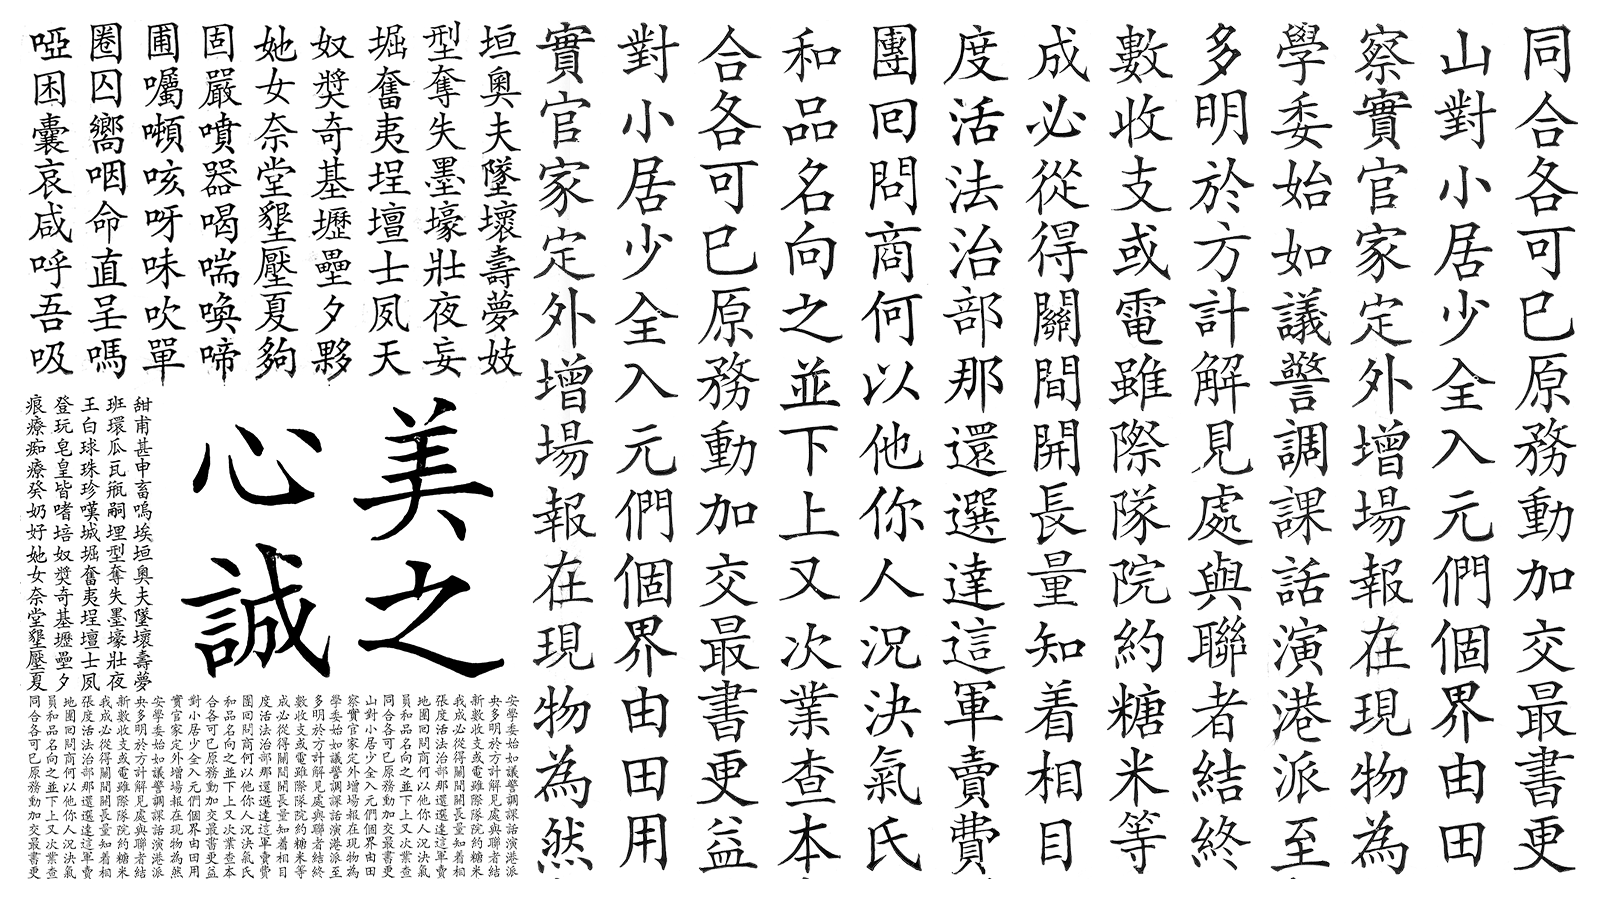 2020 合法免費中文字型整理：開源、可商用、免費！ #中文字體 (152468) - 癮科技 Cool3c